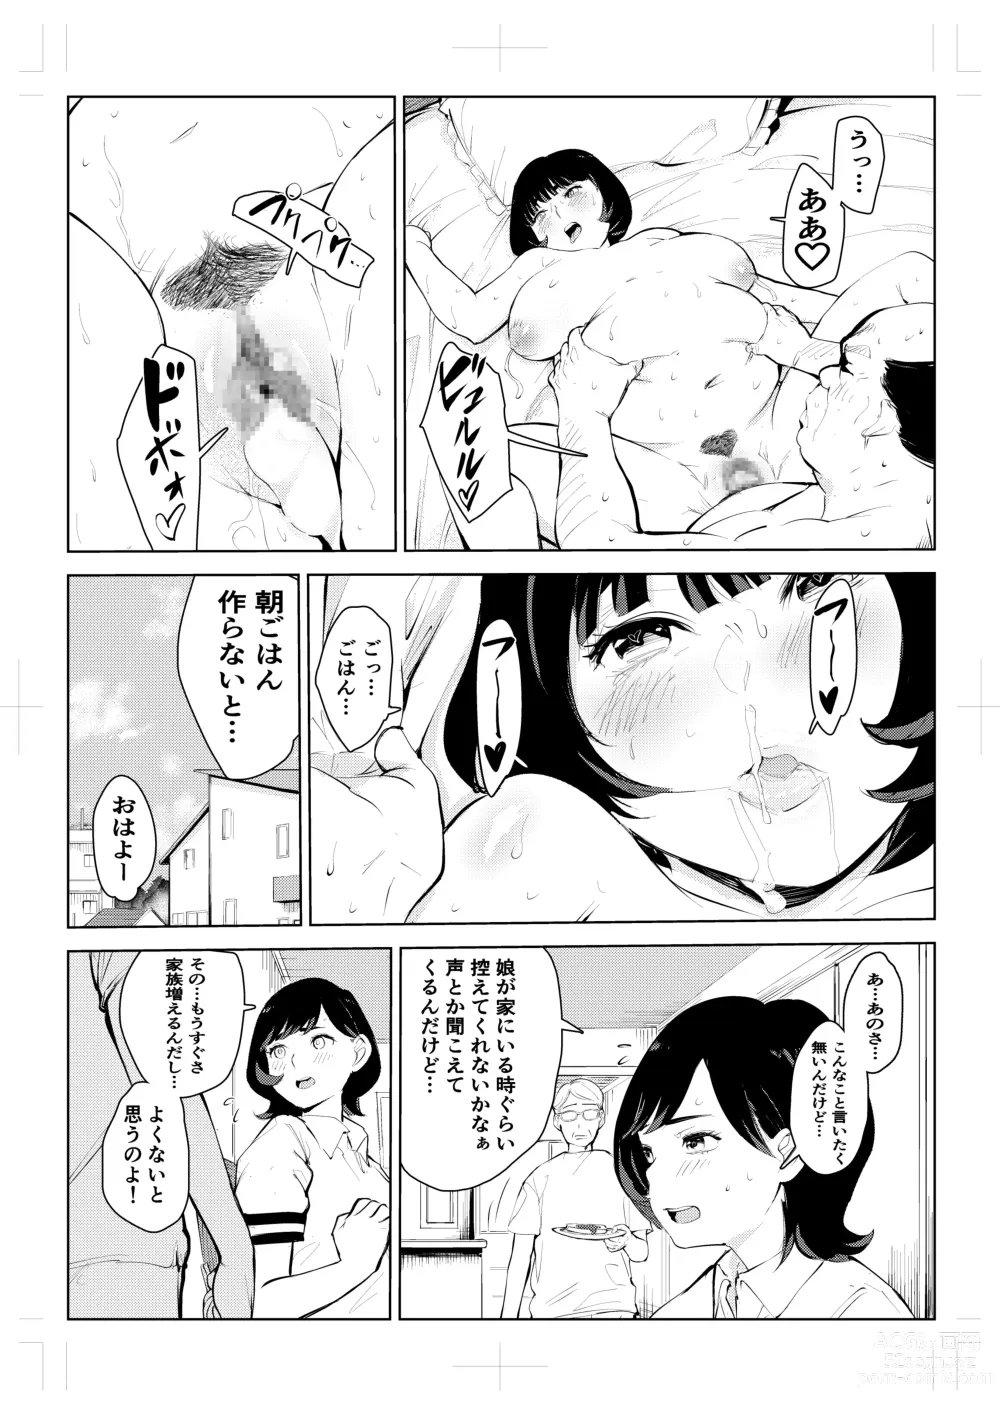 Page 86 of doujinshi 40-sai no Mahoutsukai 4